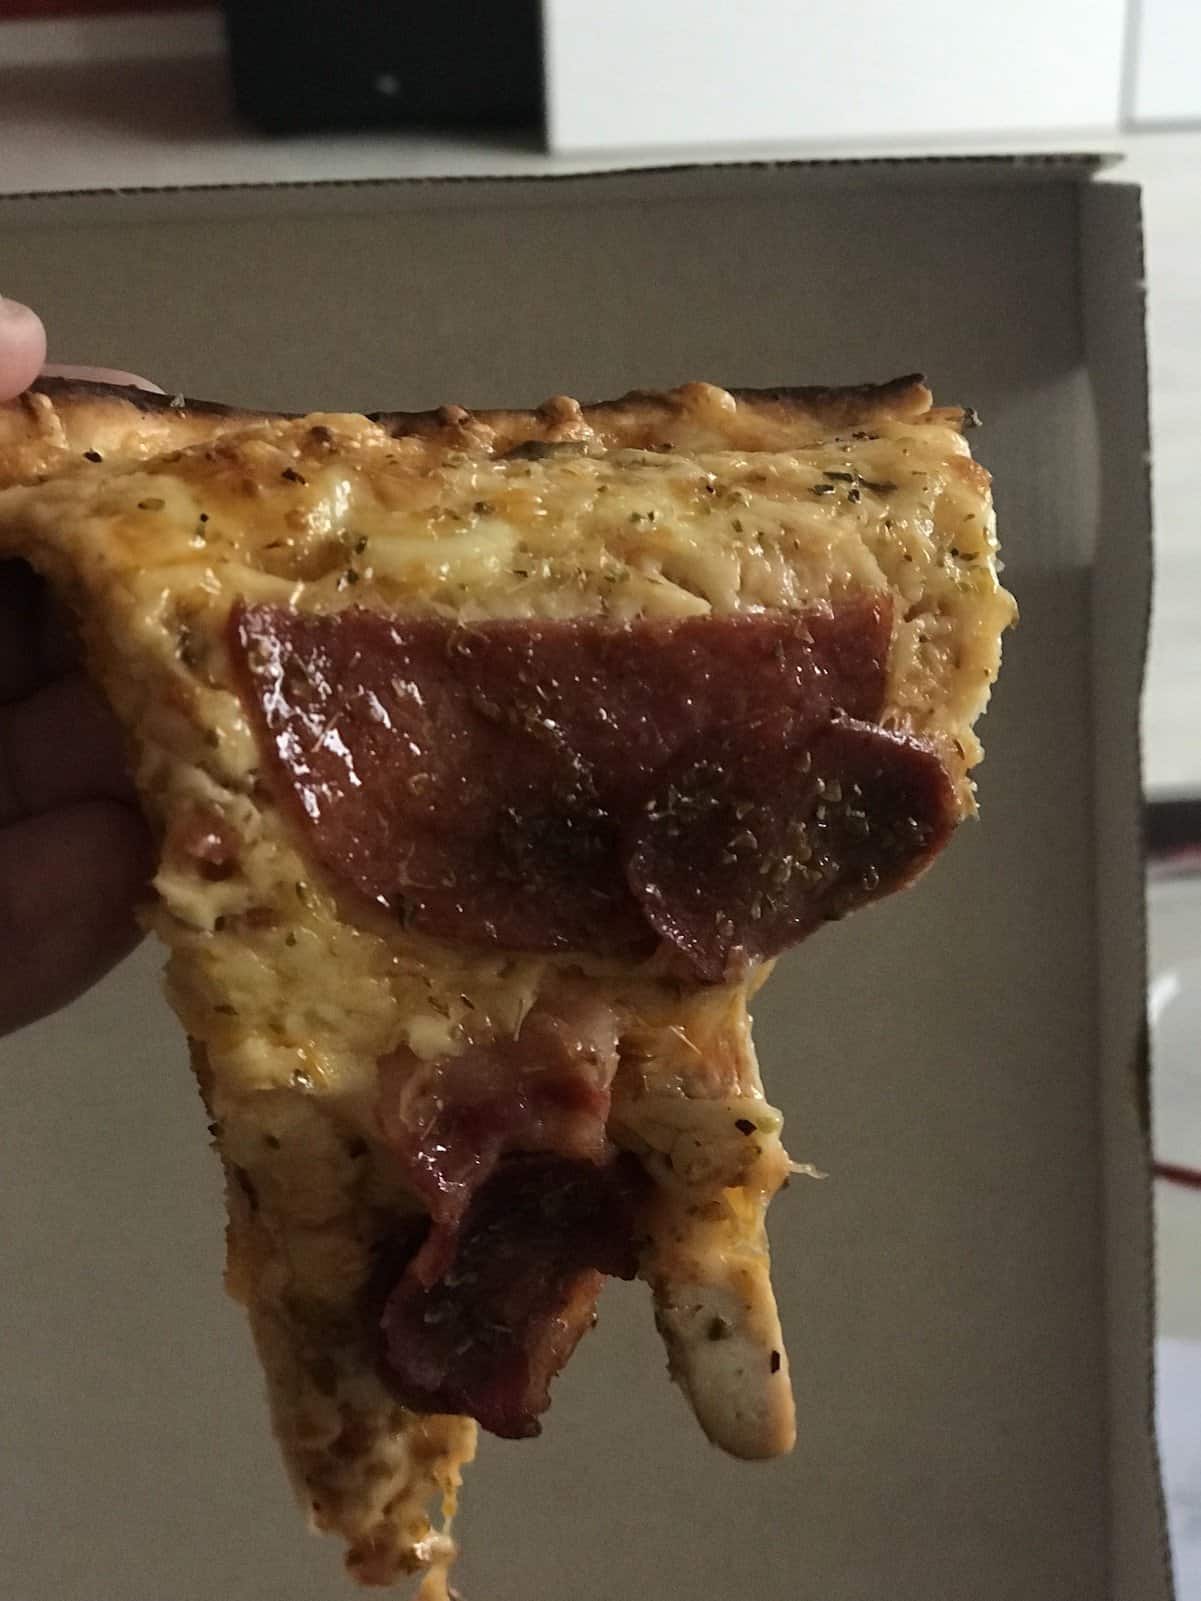 Dünne Pizza ist dünn - genau das, was ich eigentlich mag!